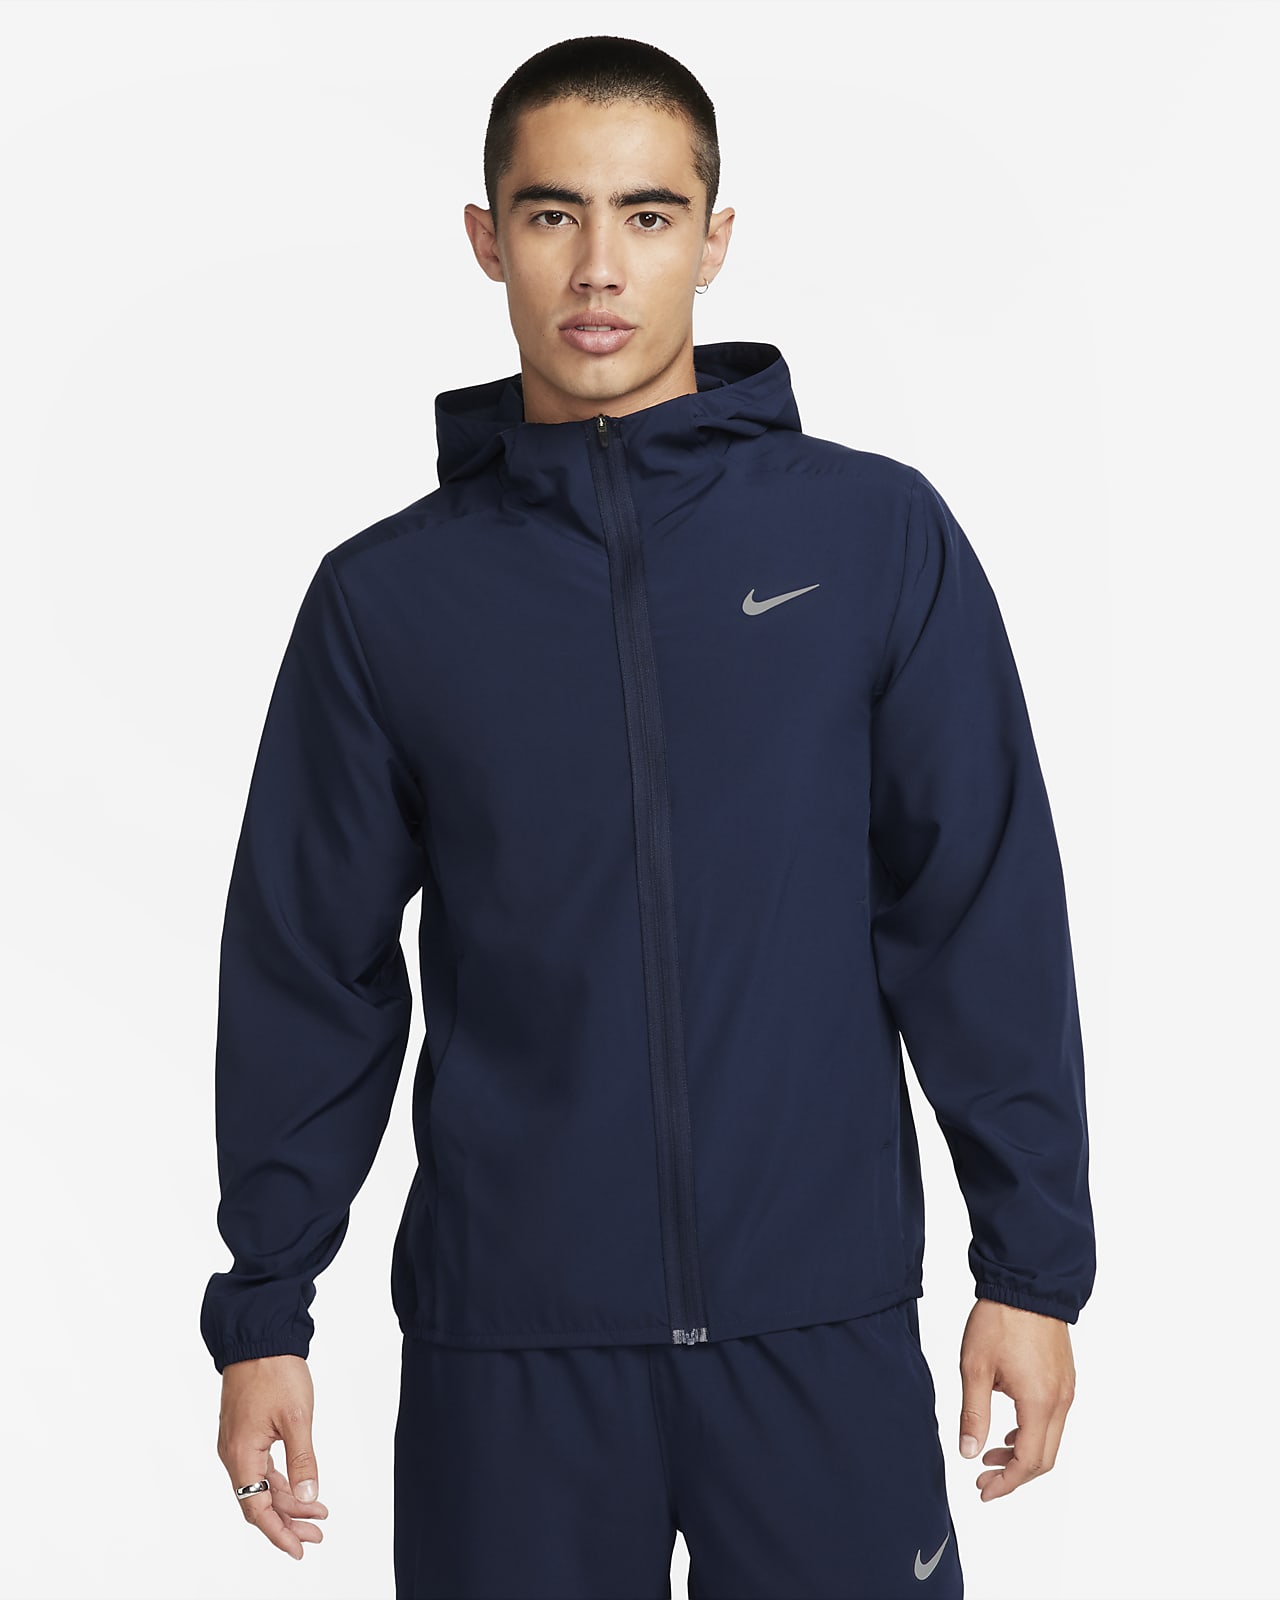 Nike Running Jackets - Buy Nike Running Jackets online in India